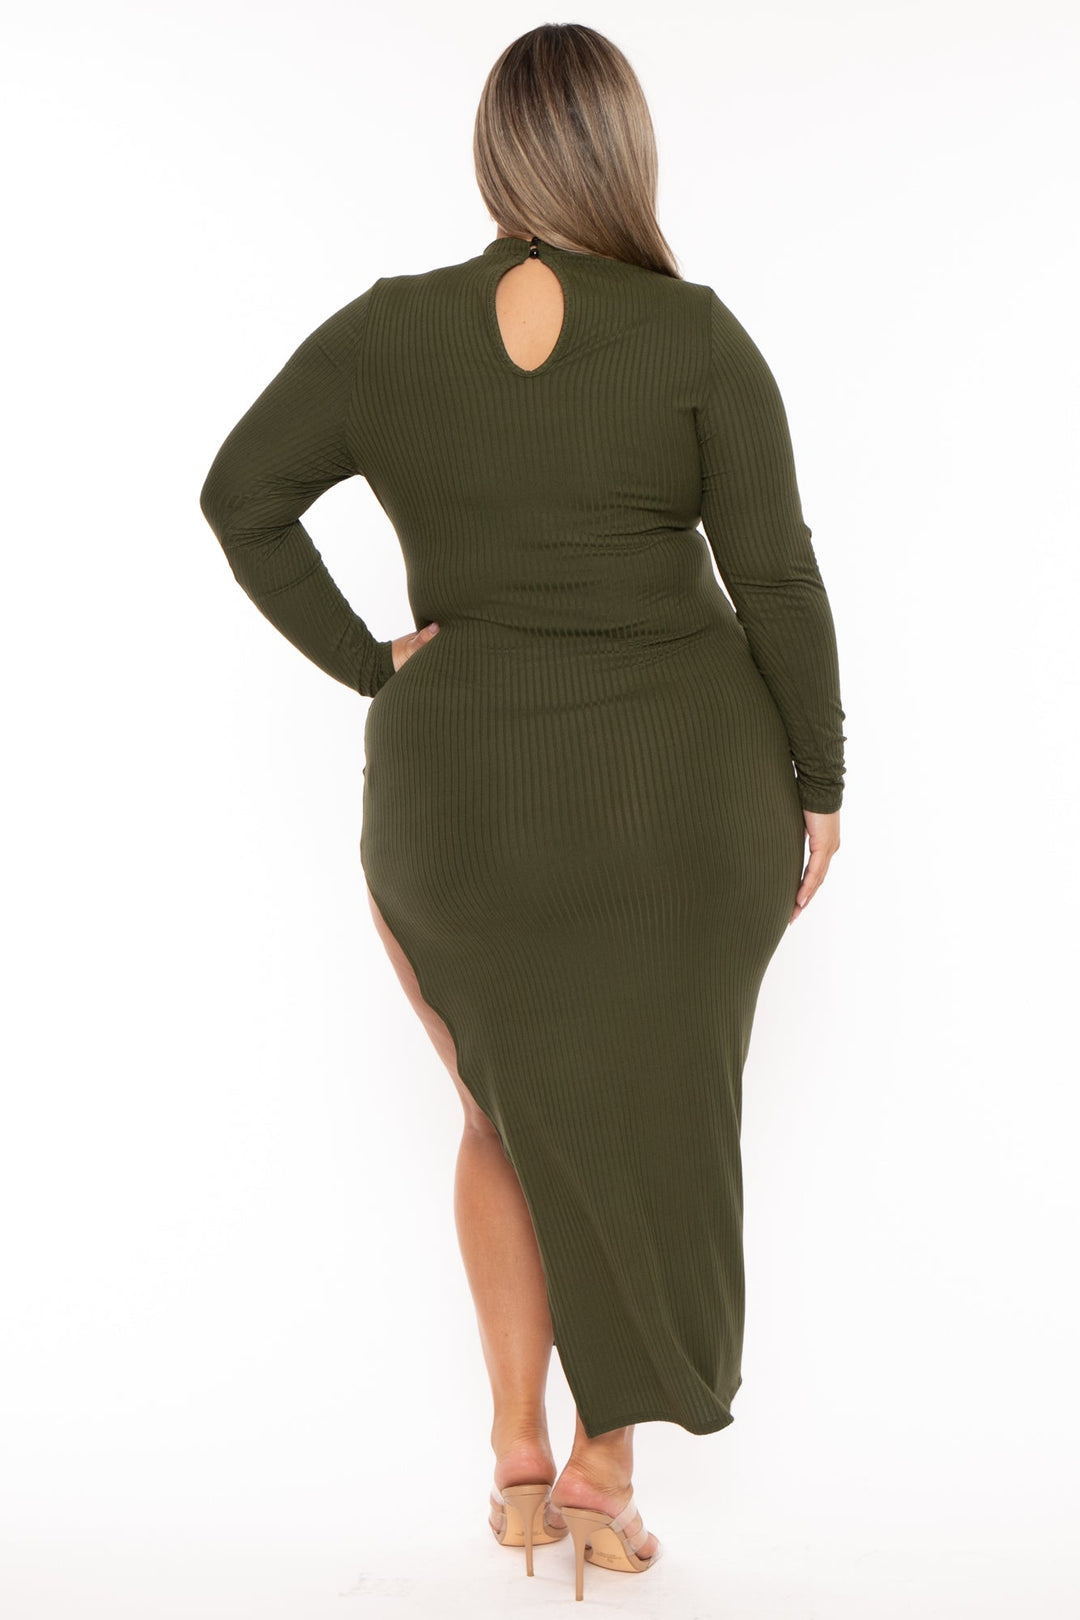 Curvy Sense Dresses Plus Size Asiah Ribbed  Maxi Dress - Olive